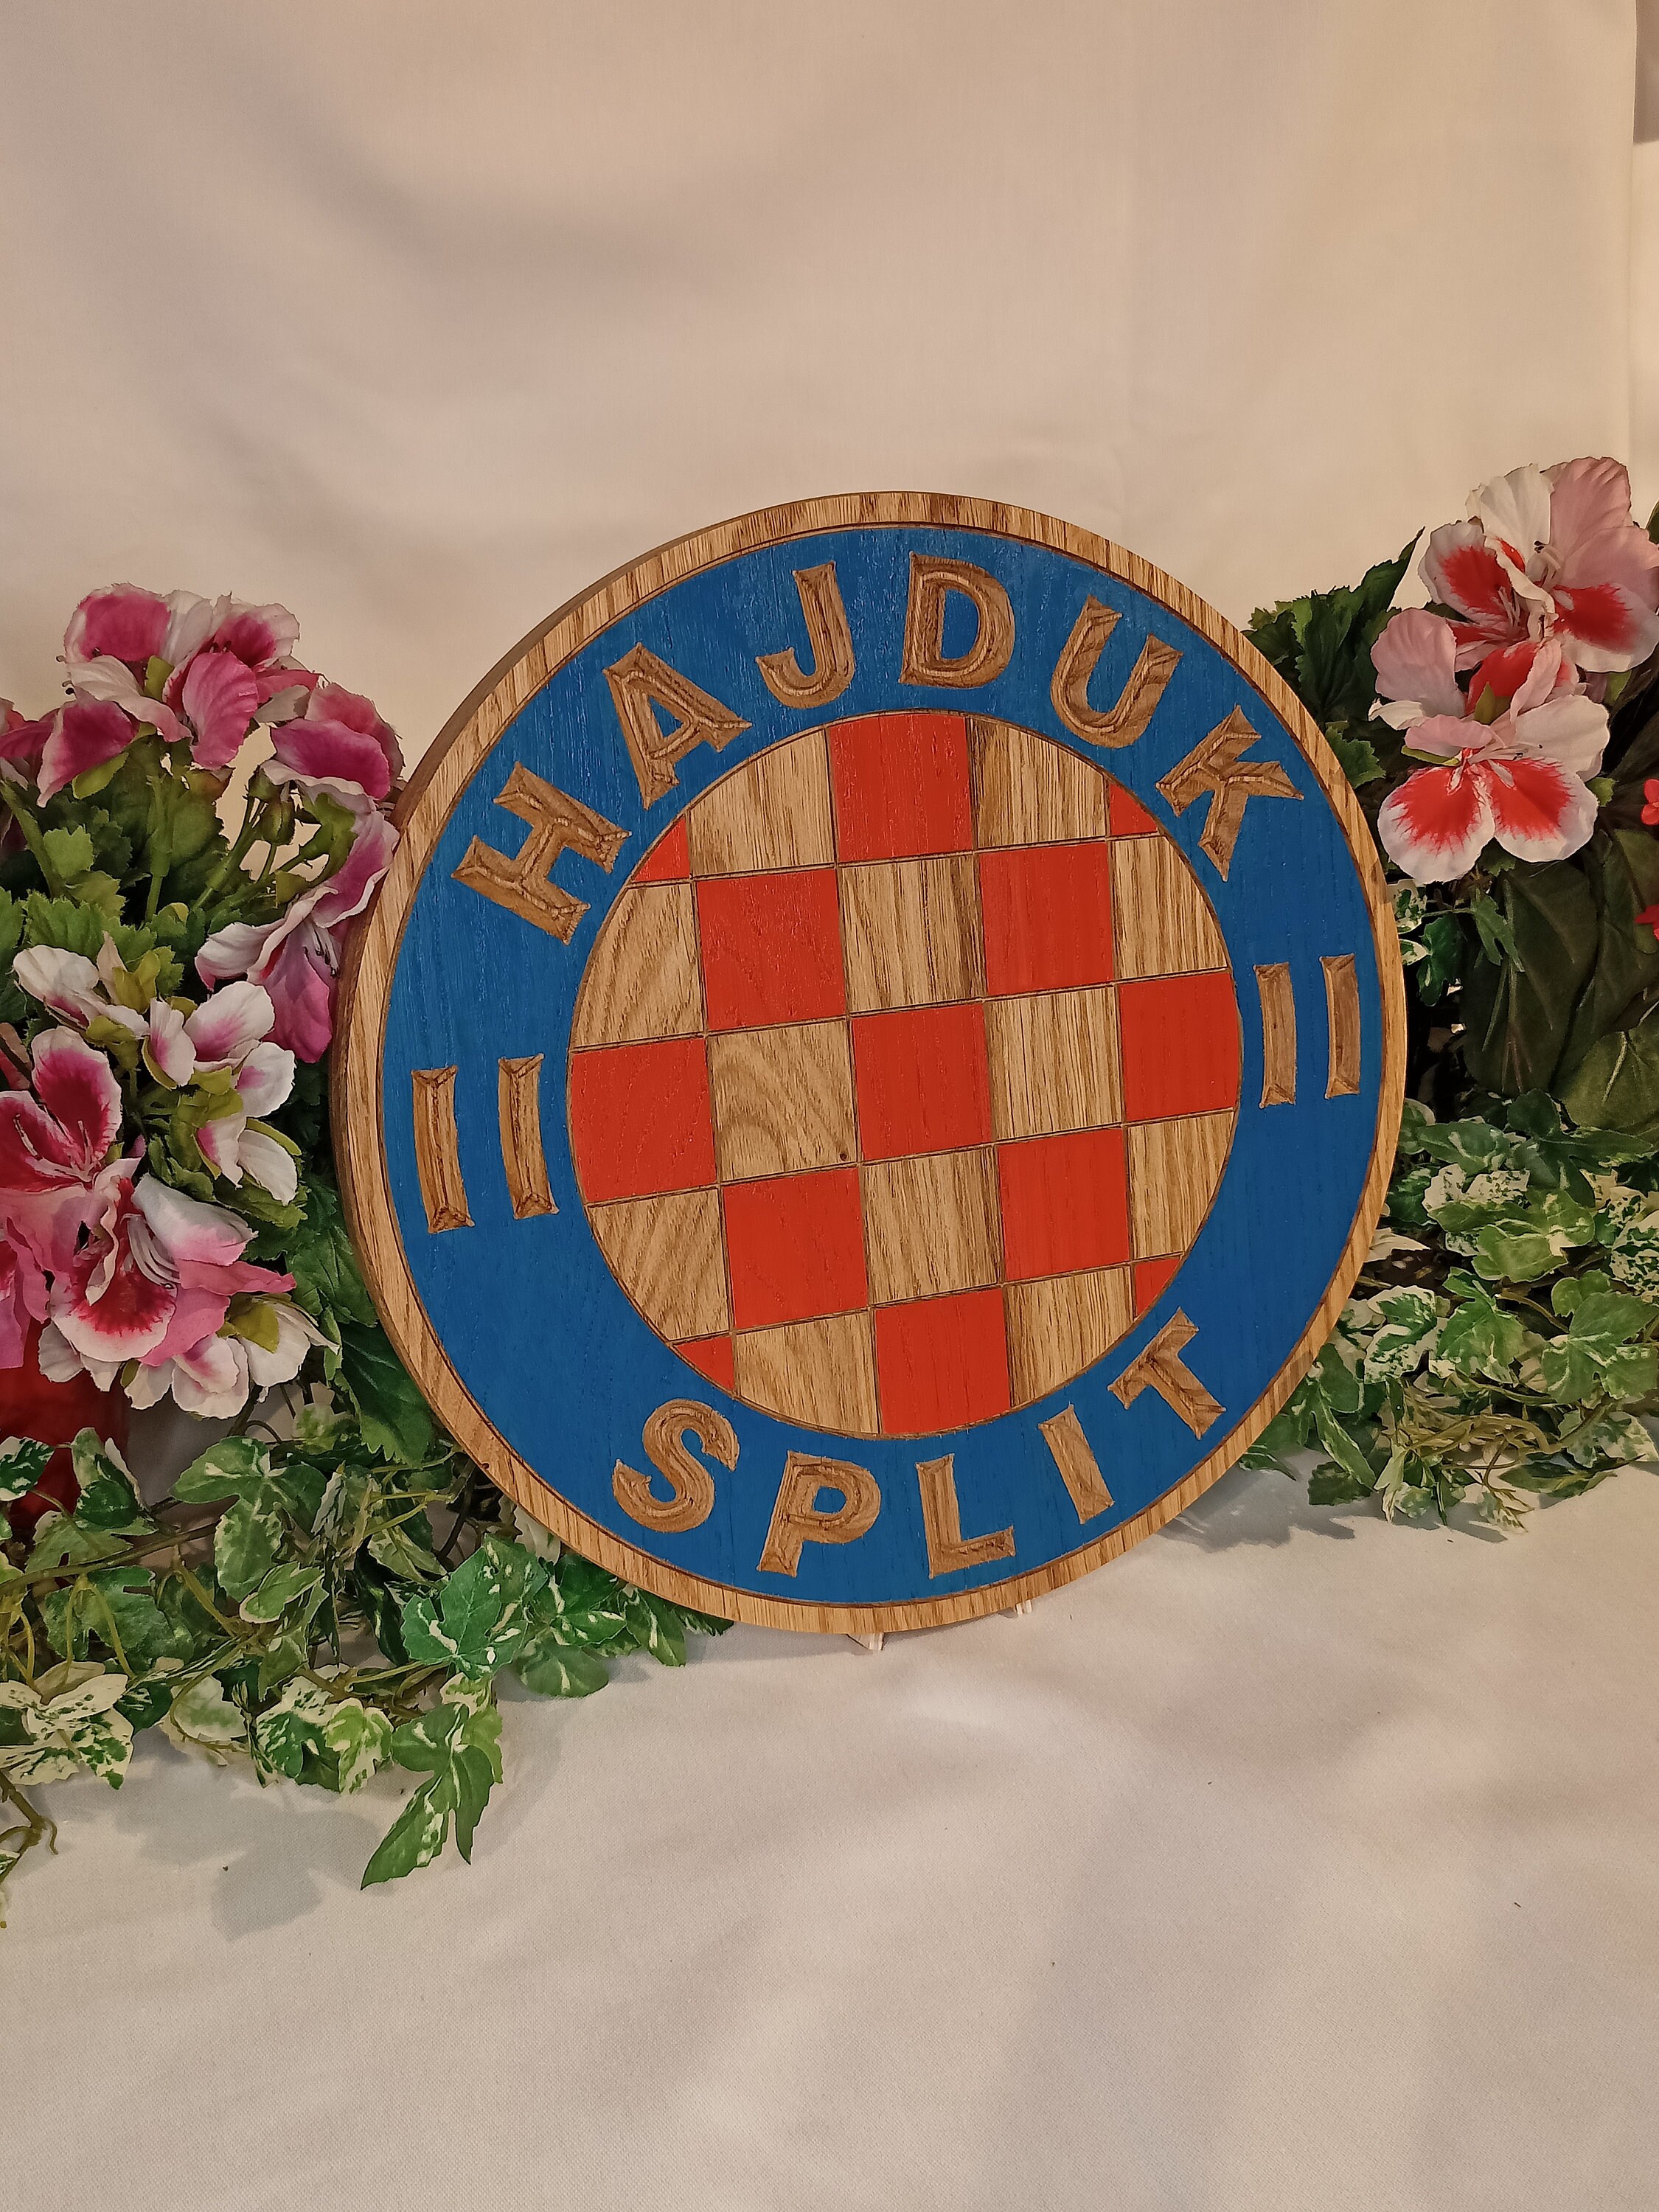 Coat of arms FC Hajduk, Split, Croatia, on a concrete background